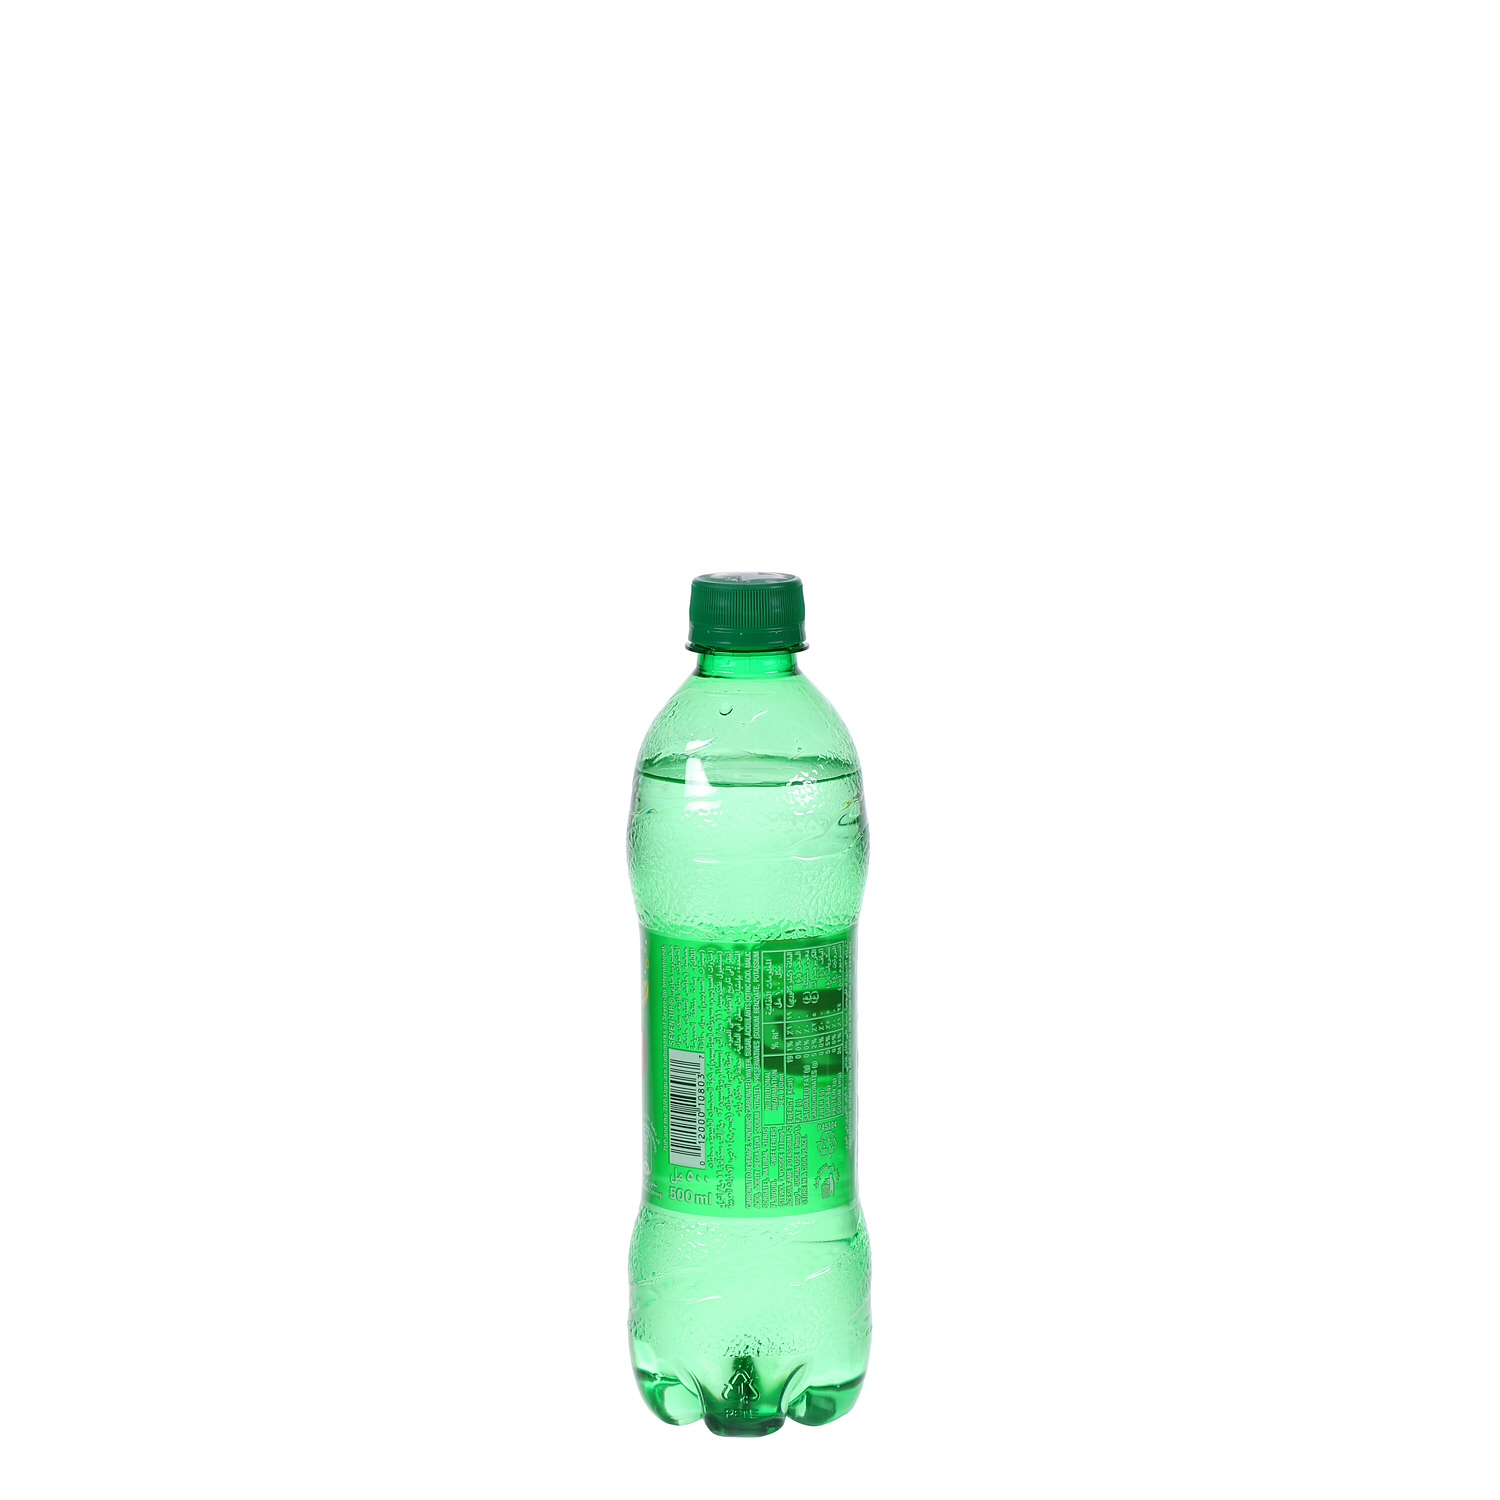 7UP Plastic Bottle 500 ml